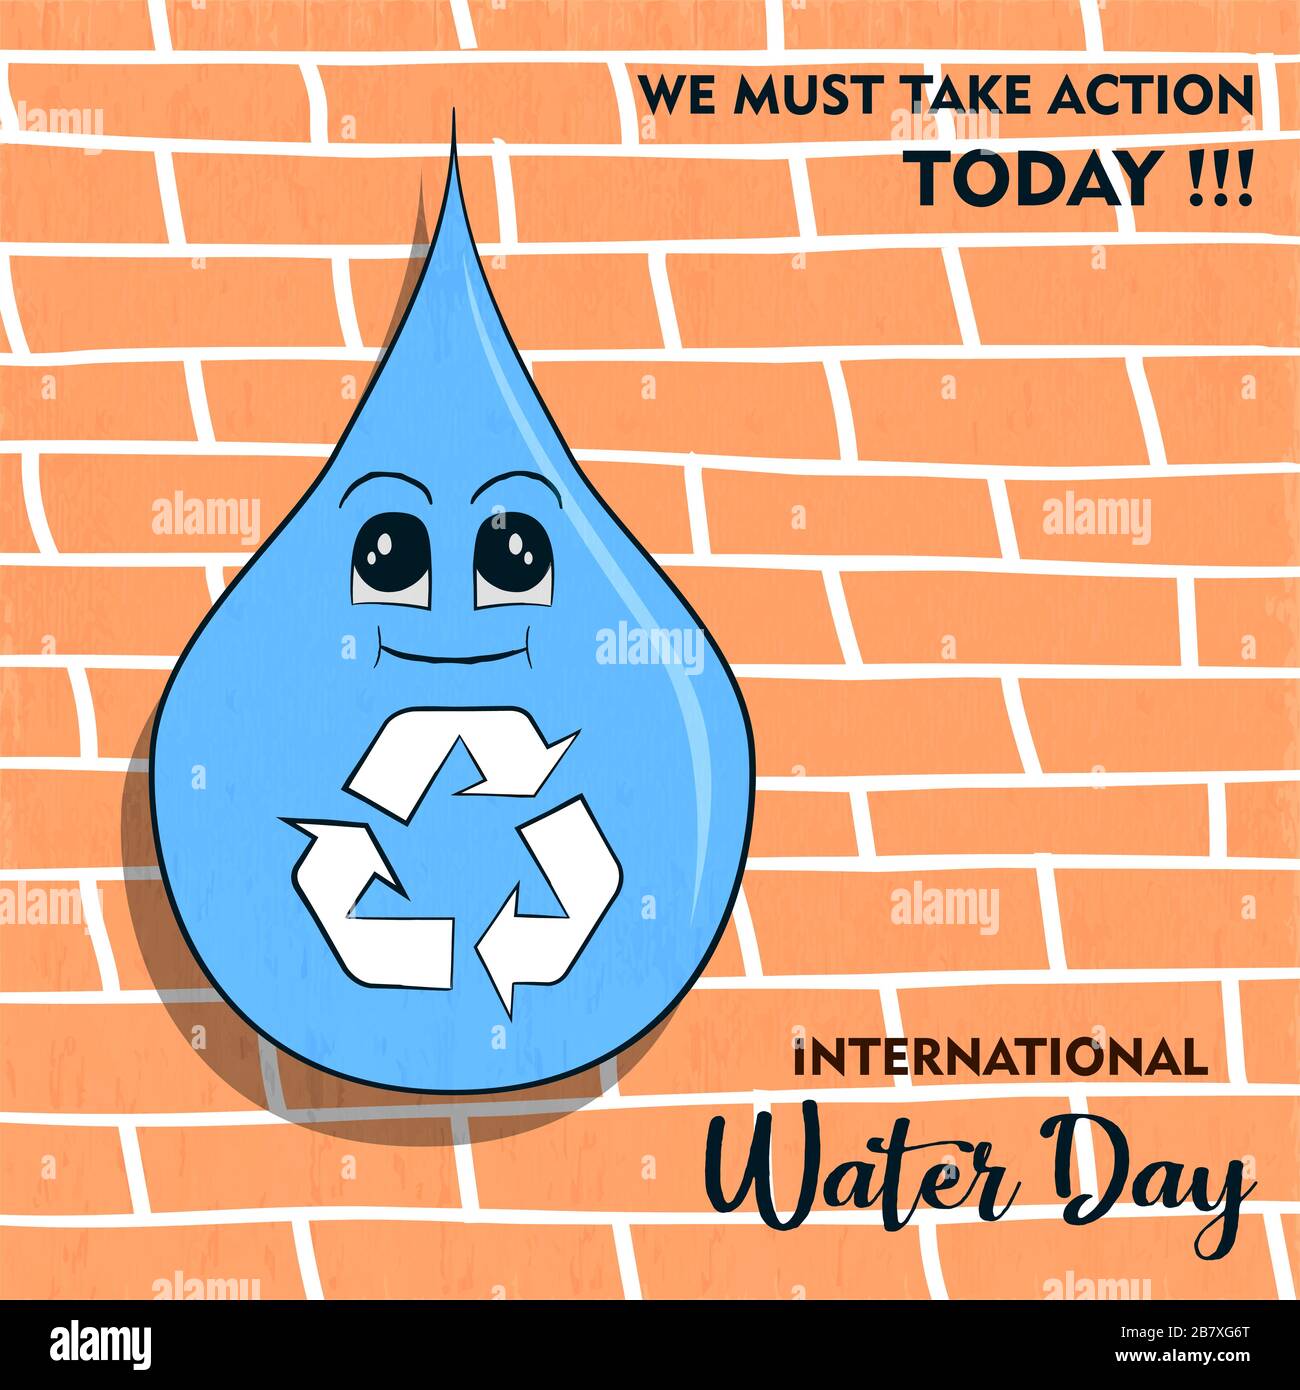 Internationale Grußkarte für den Wassertag mit natürlichem Tropfen und Recycling-Symbol für die Abfallreduzierung. Darstellung der Kampagnenveranstaltung am 22. märz, Stock Vektor